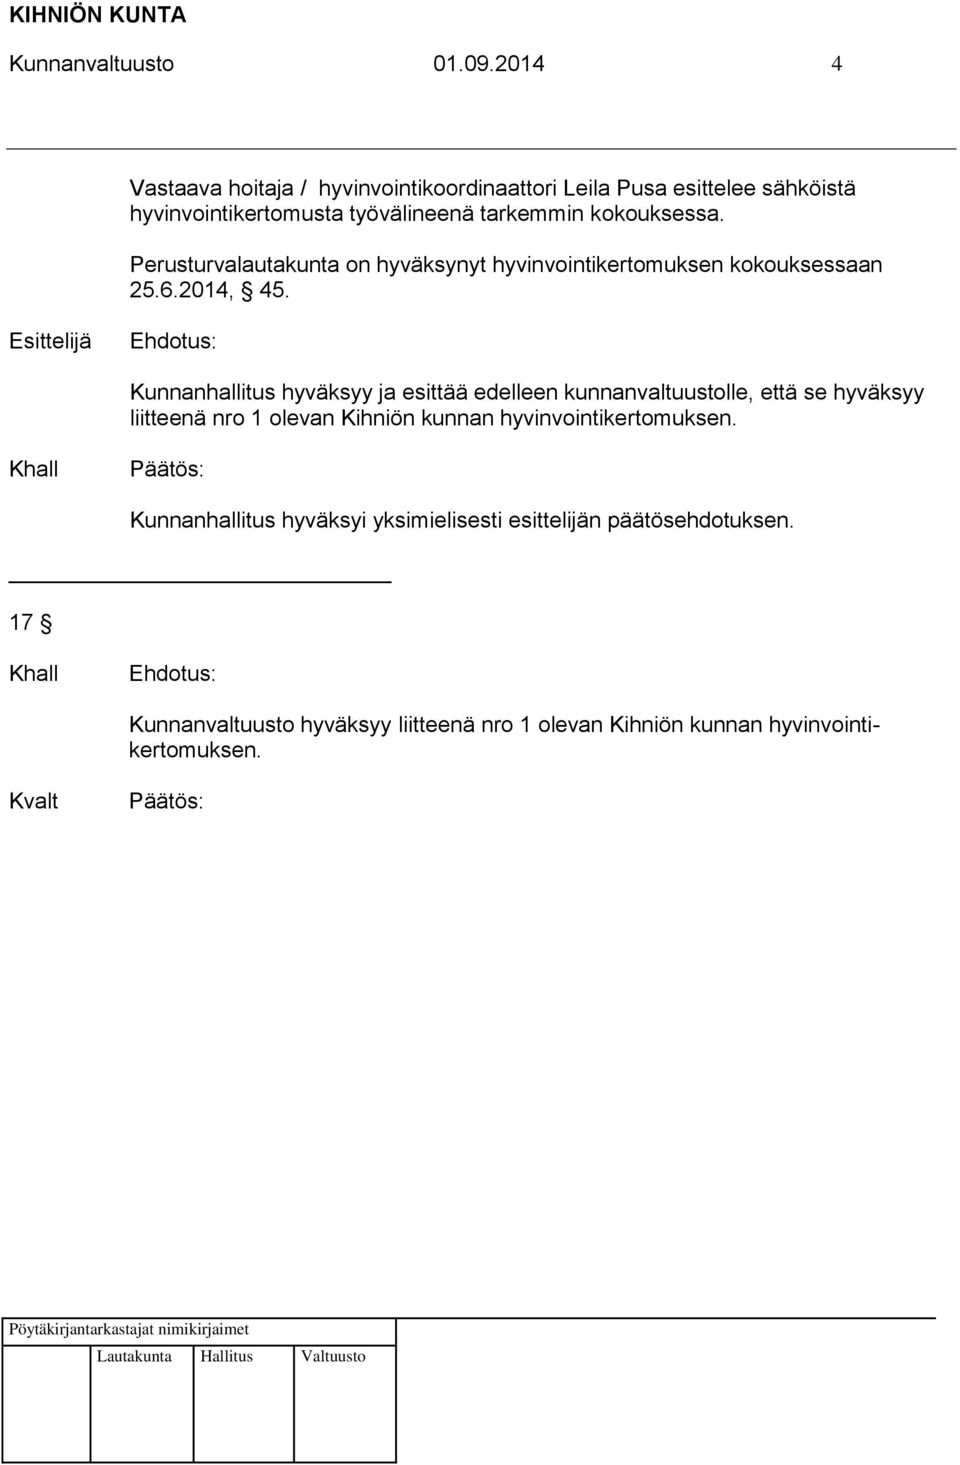 Perusturvalautakunta on hyväksynyt hyvinvointikertomuksen kokouksessaan 25.6.2014, 45.